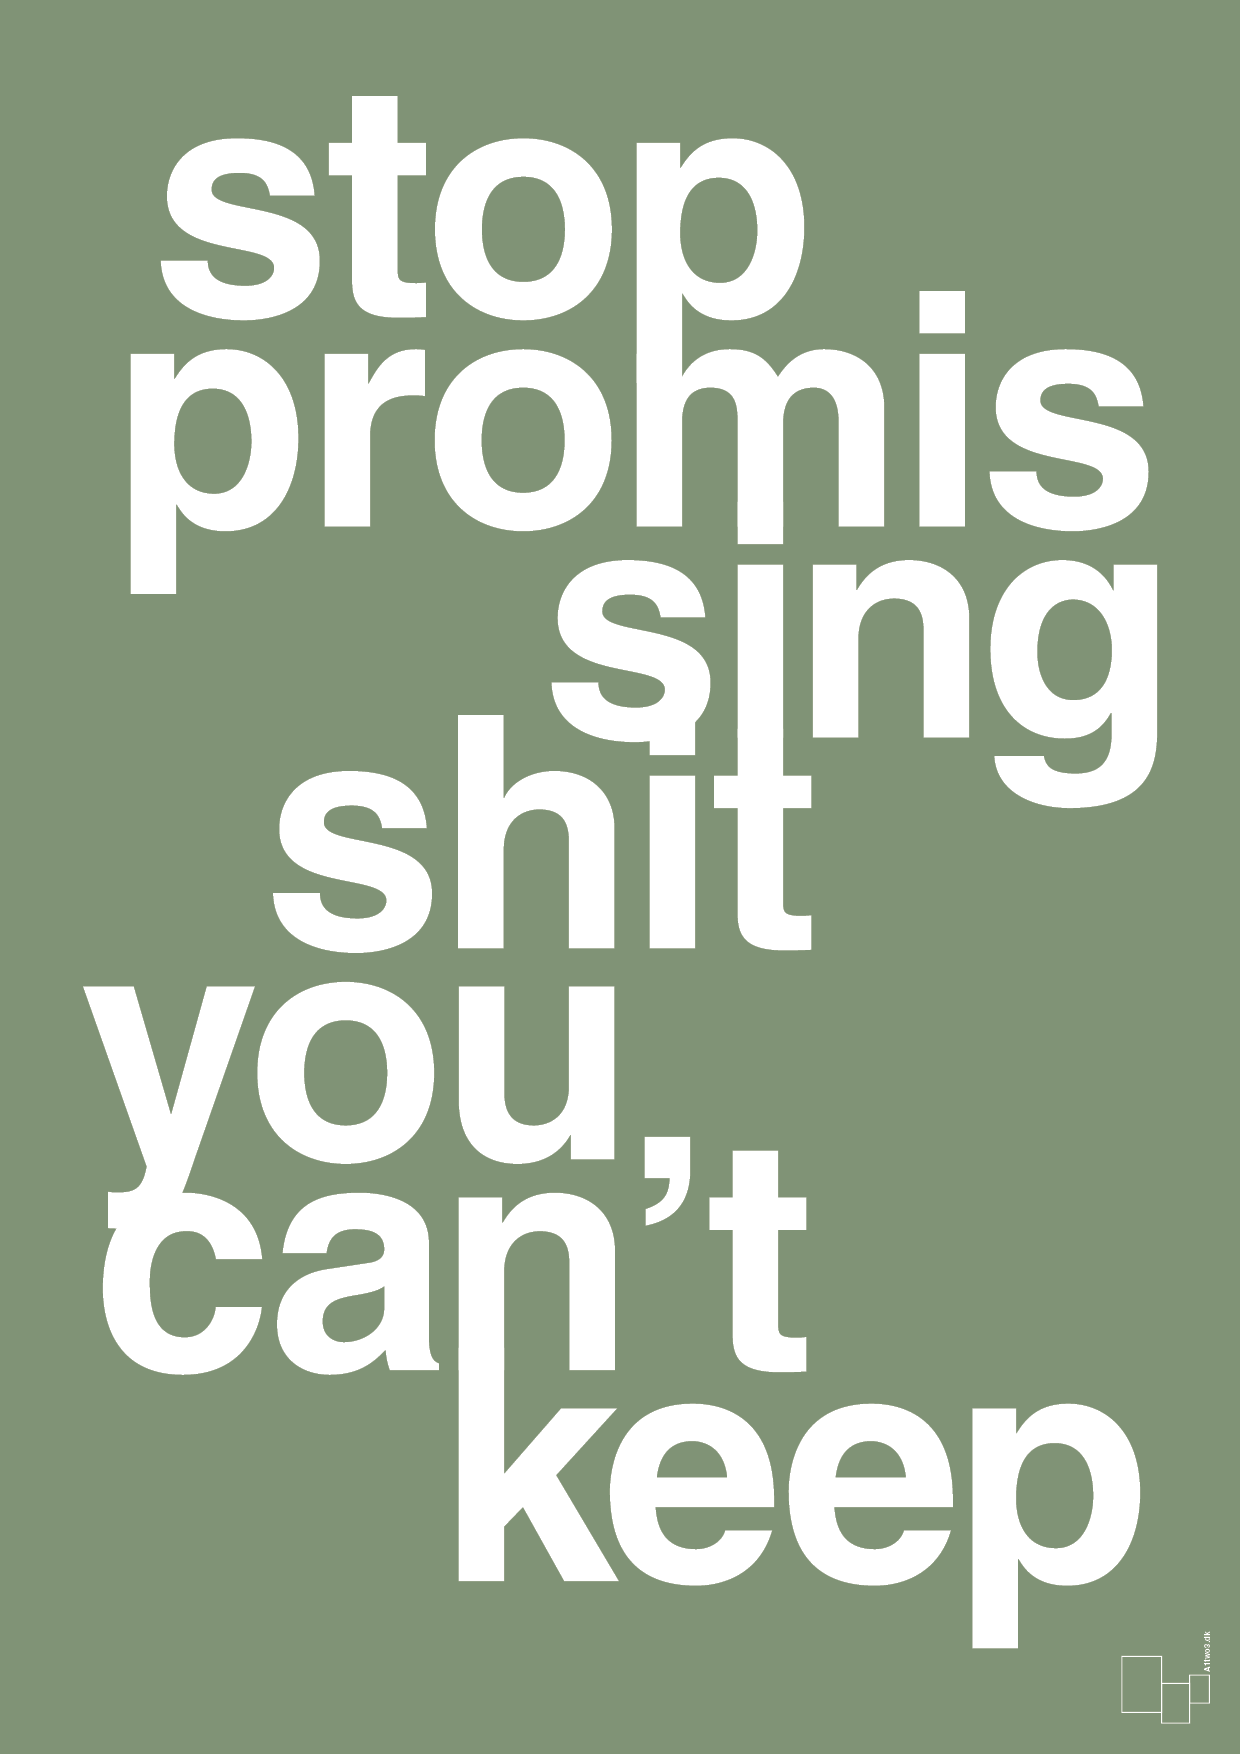 stop promissing shit you cant keep - Plakat med Ordsprog i Jade